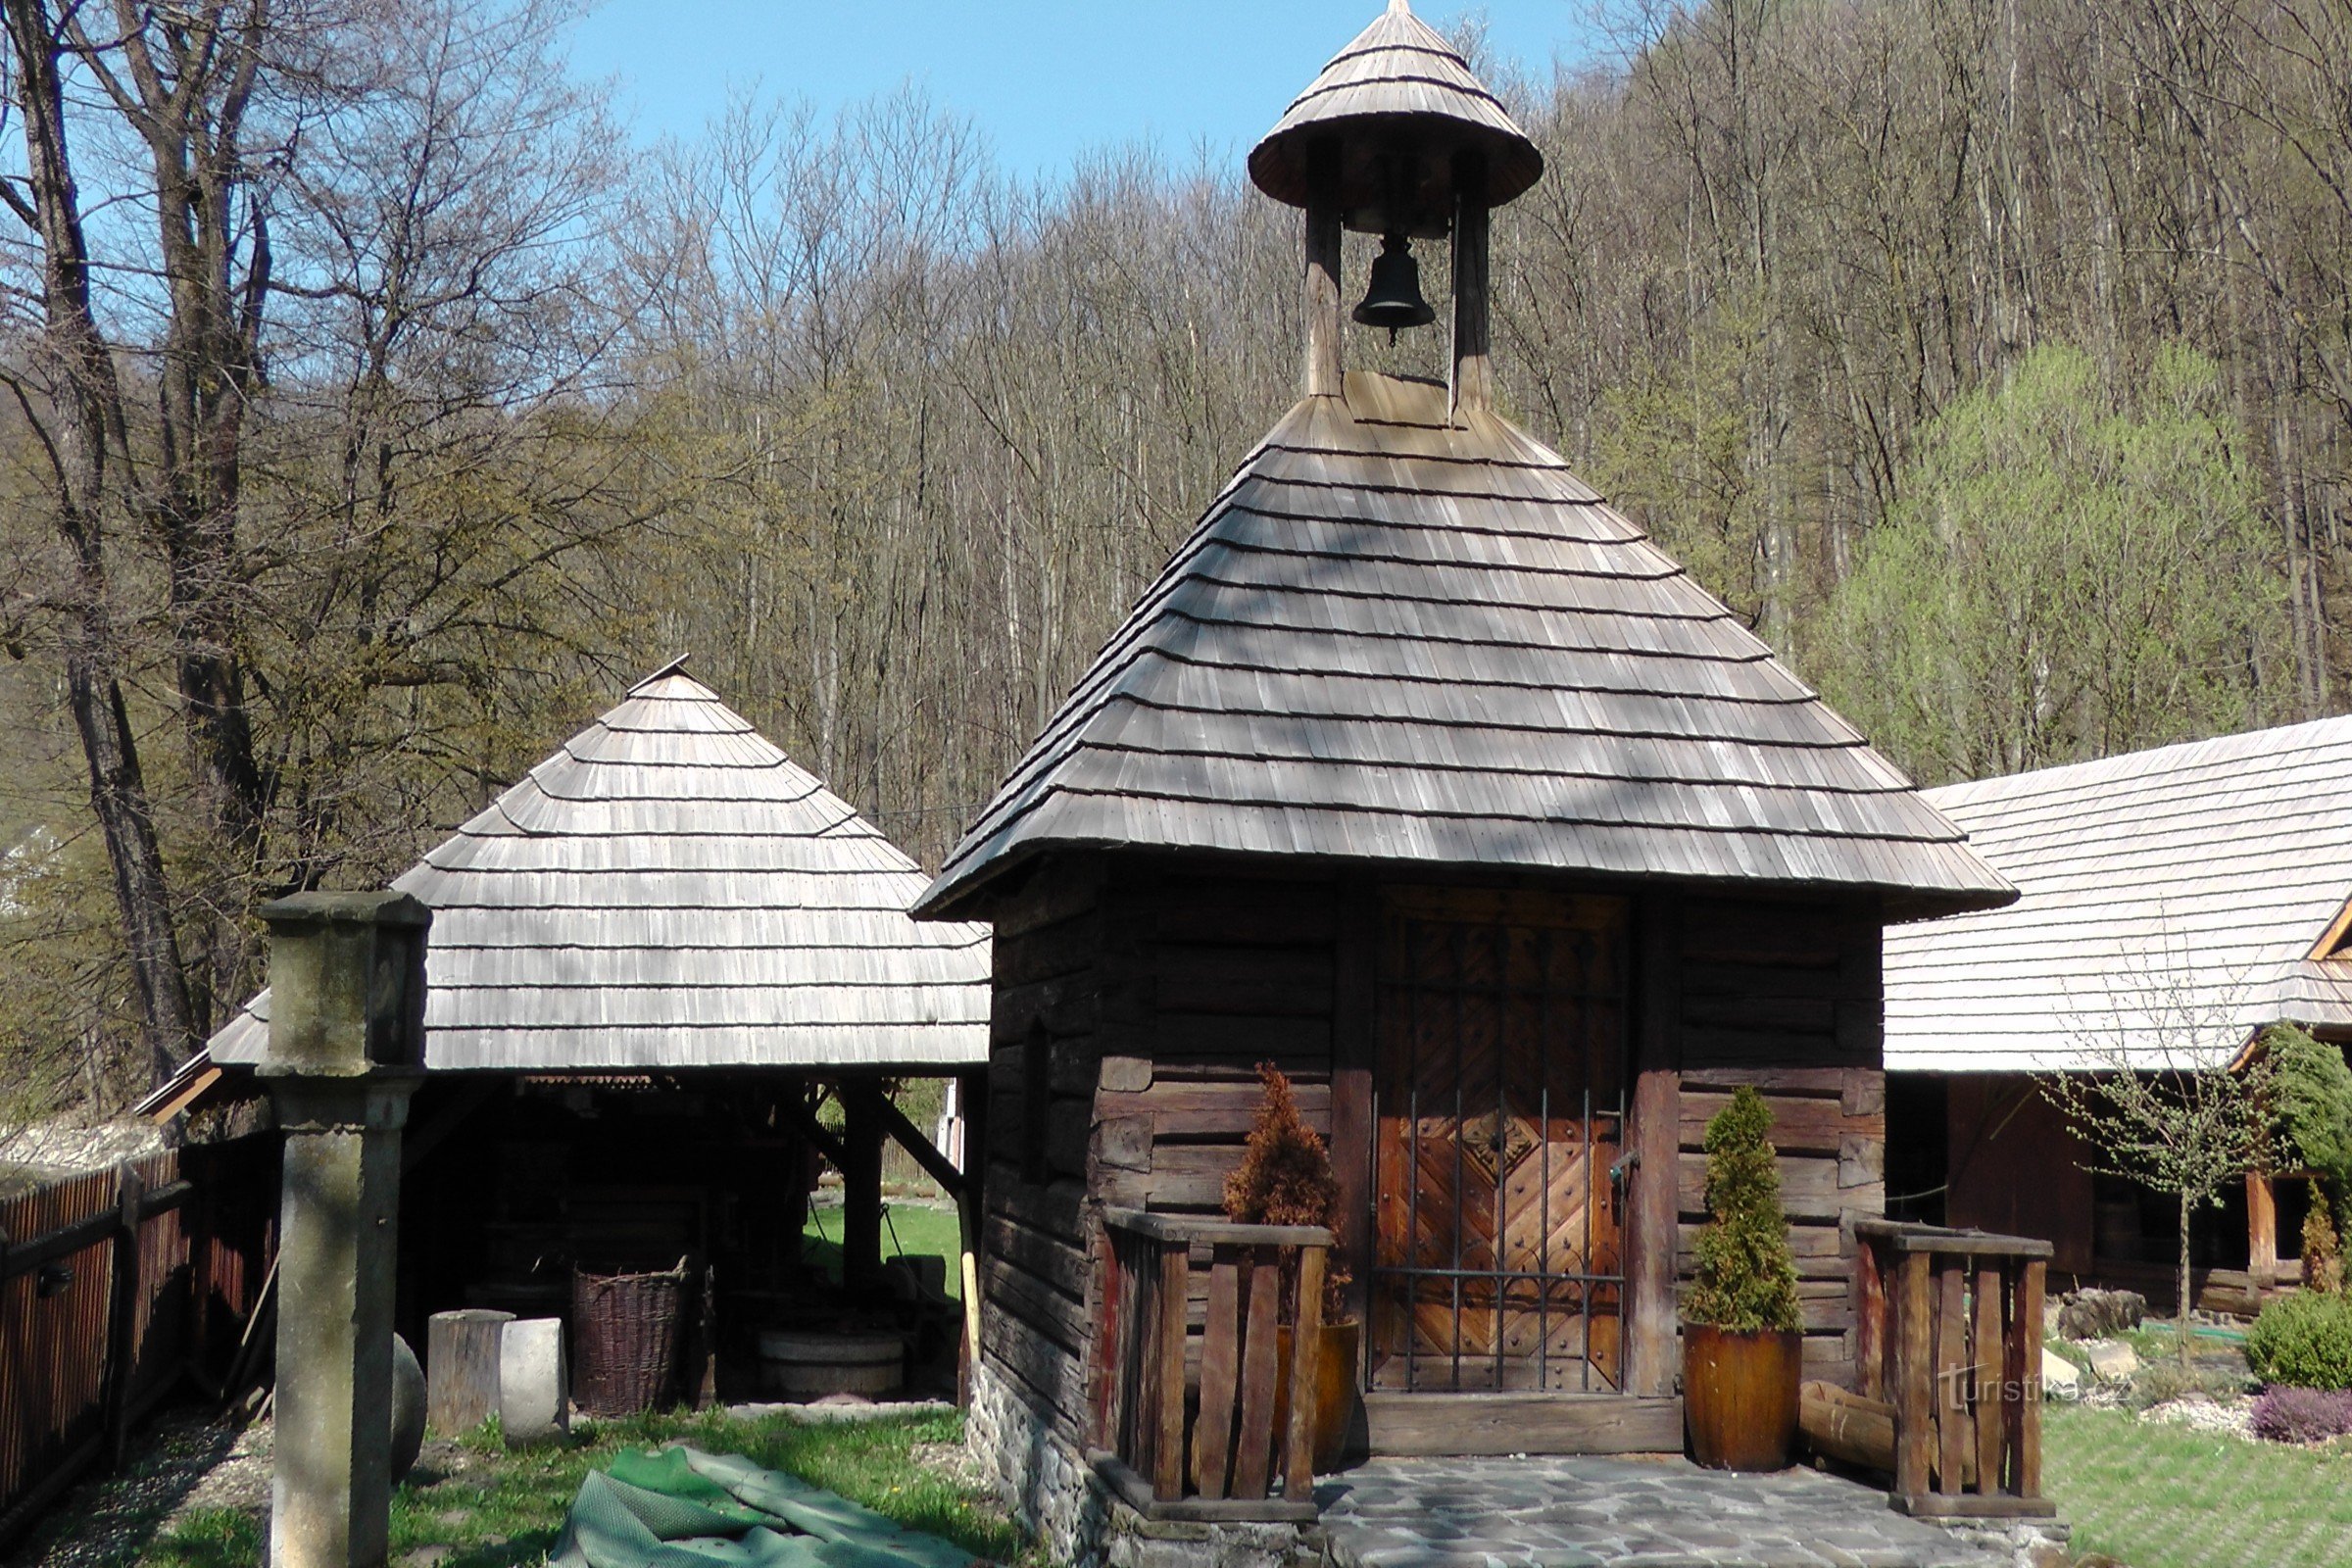 Šmiřák's mill in Kozlovice